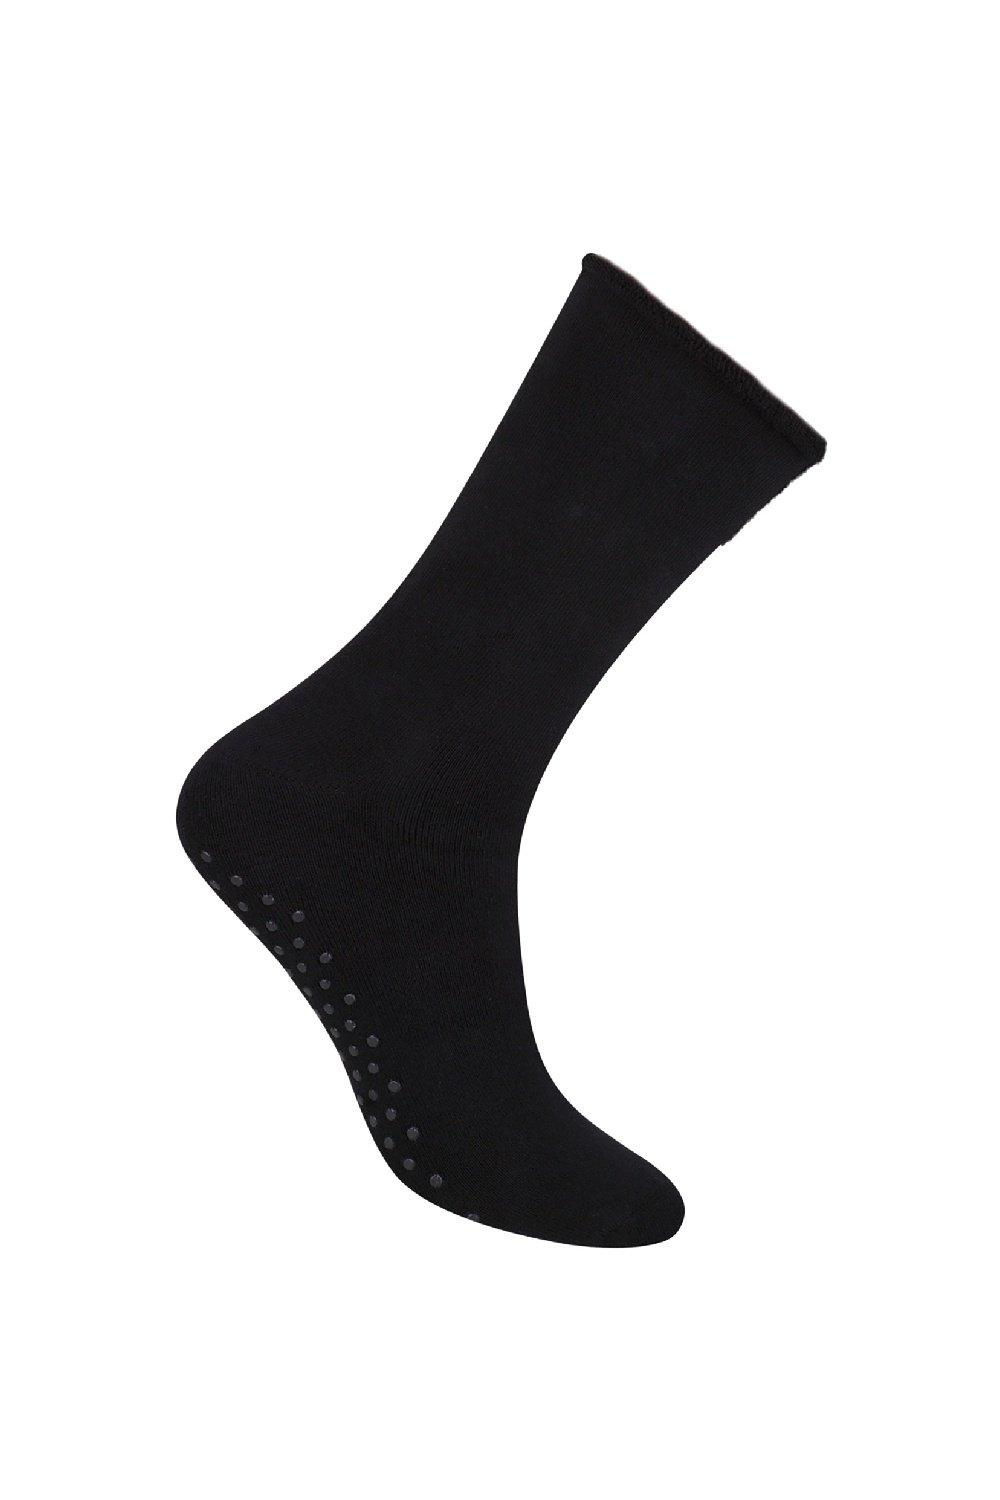 Хлопковые носки-тапочки Повседневные простые носки до середины икры с захватами Steven, черный женские носки спортивные носки до середины икры универсальные повседневные носки с искусственным ворсом в студенческом стиле